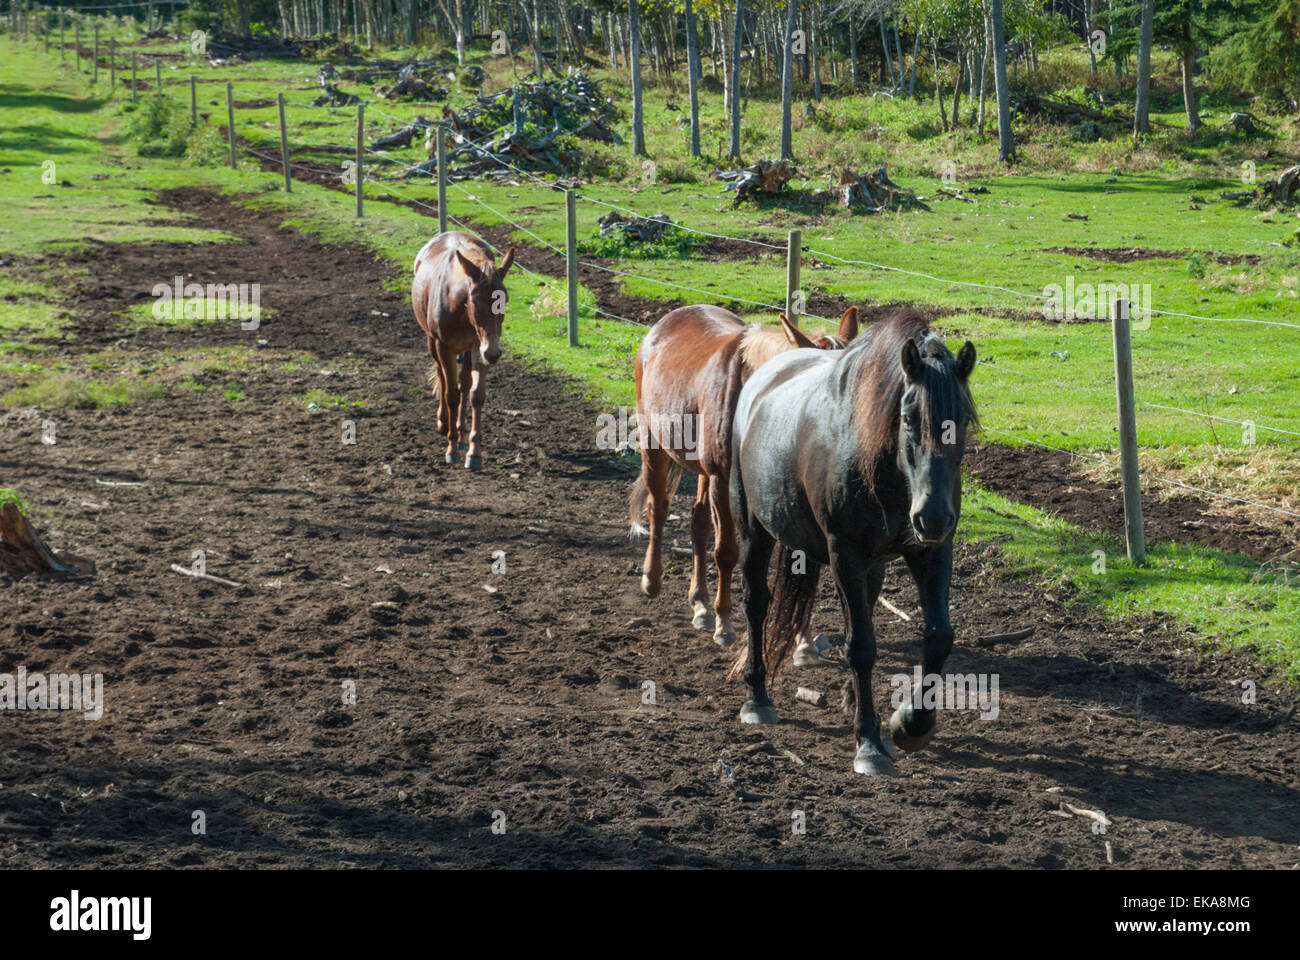 Un cheval canadien, Equus ferus caballus, conduisant une paire de mules comme ils marchent le long d'une clôture basse-cour Banque D'Images